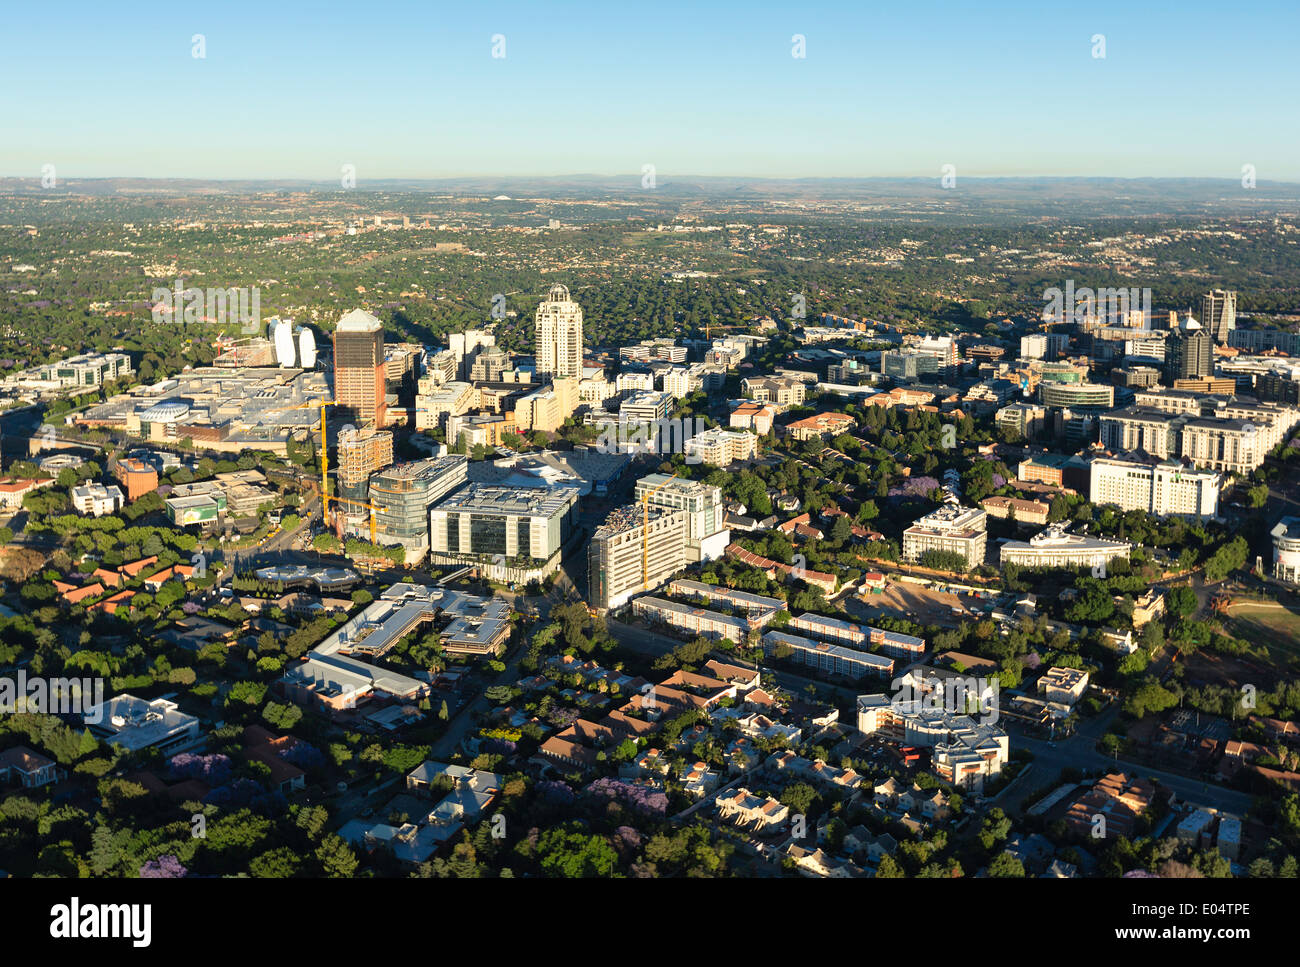 Vista aérea de Sandton, Johannesburgo, Sudáfrica. Foto de stock